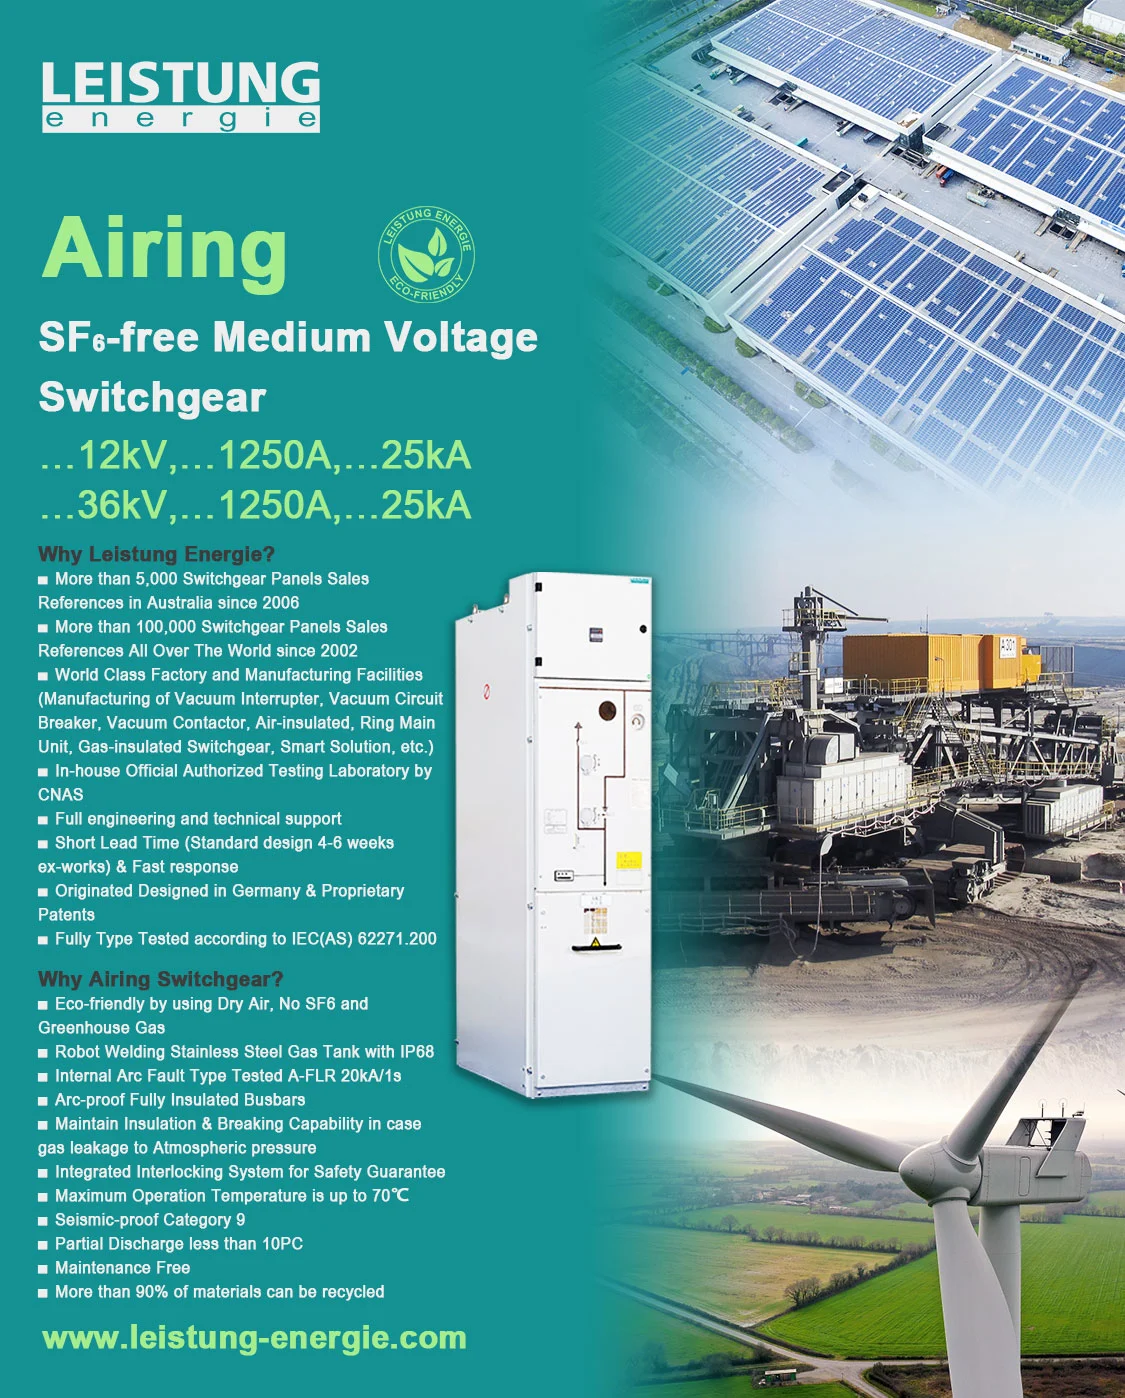 Airing SF6-free Medium Voltage Switchgear